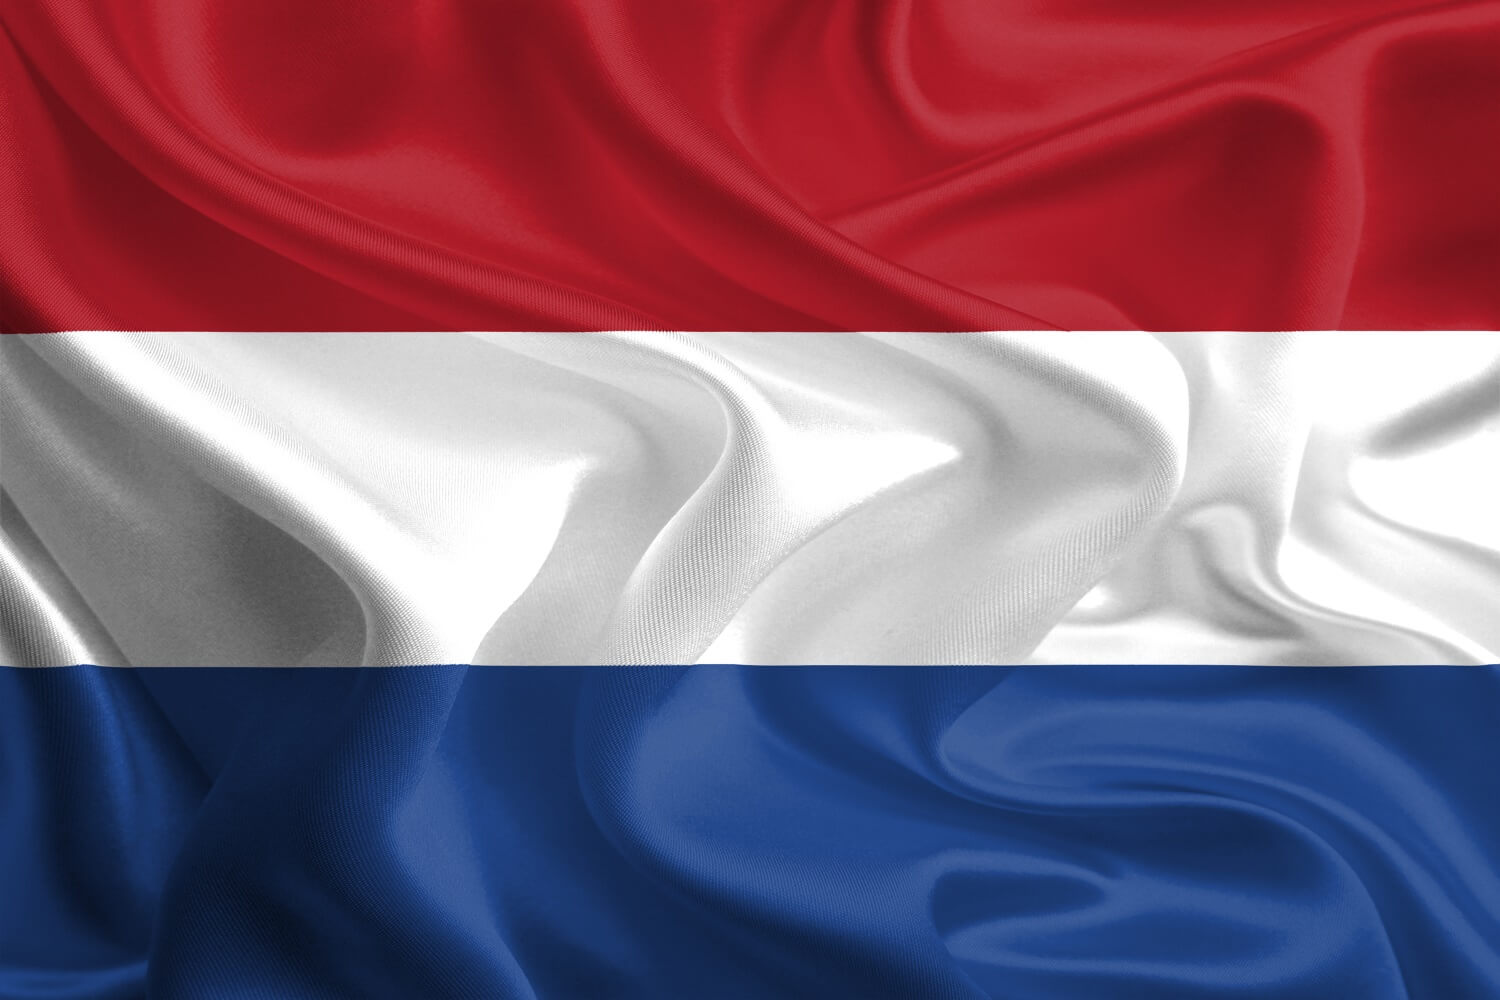 Die Flagge der Niederlande in Blau, Weiß und Rot füllt das Bild komplett aus.